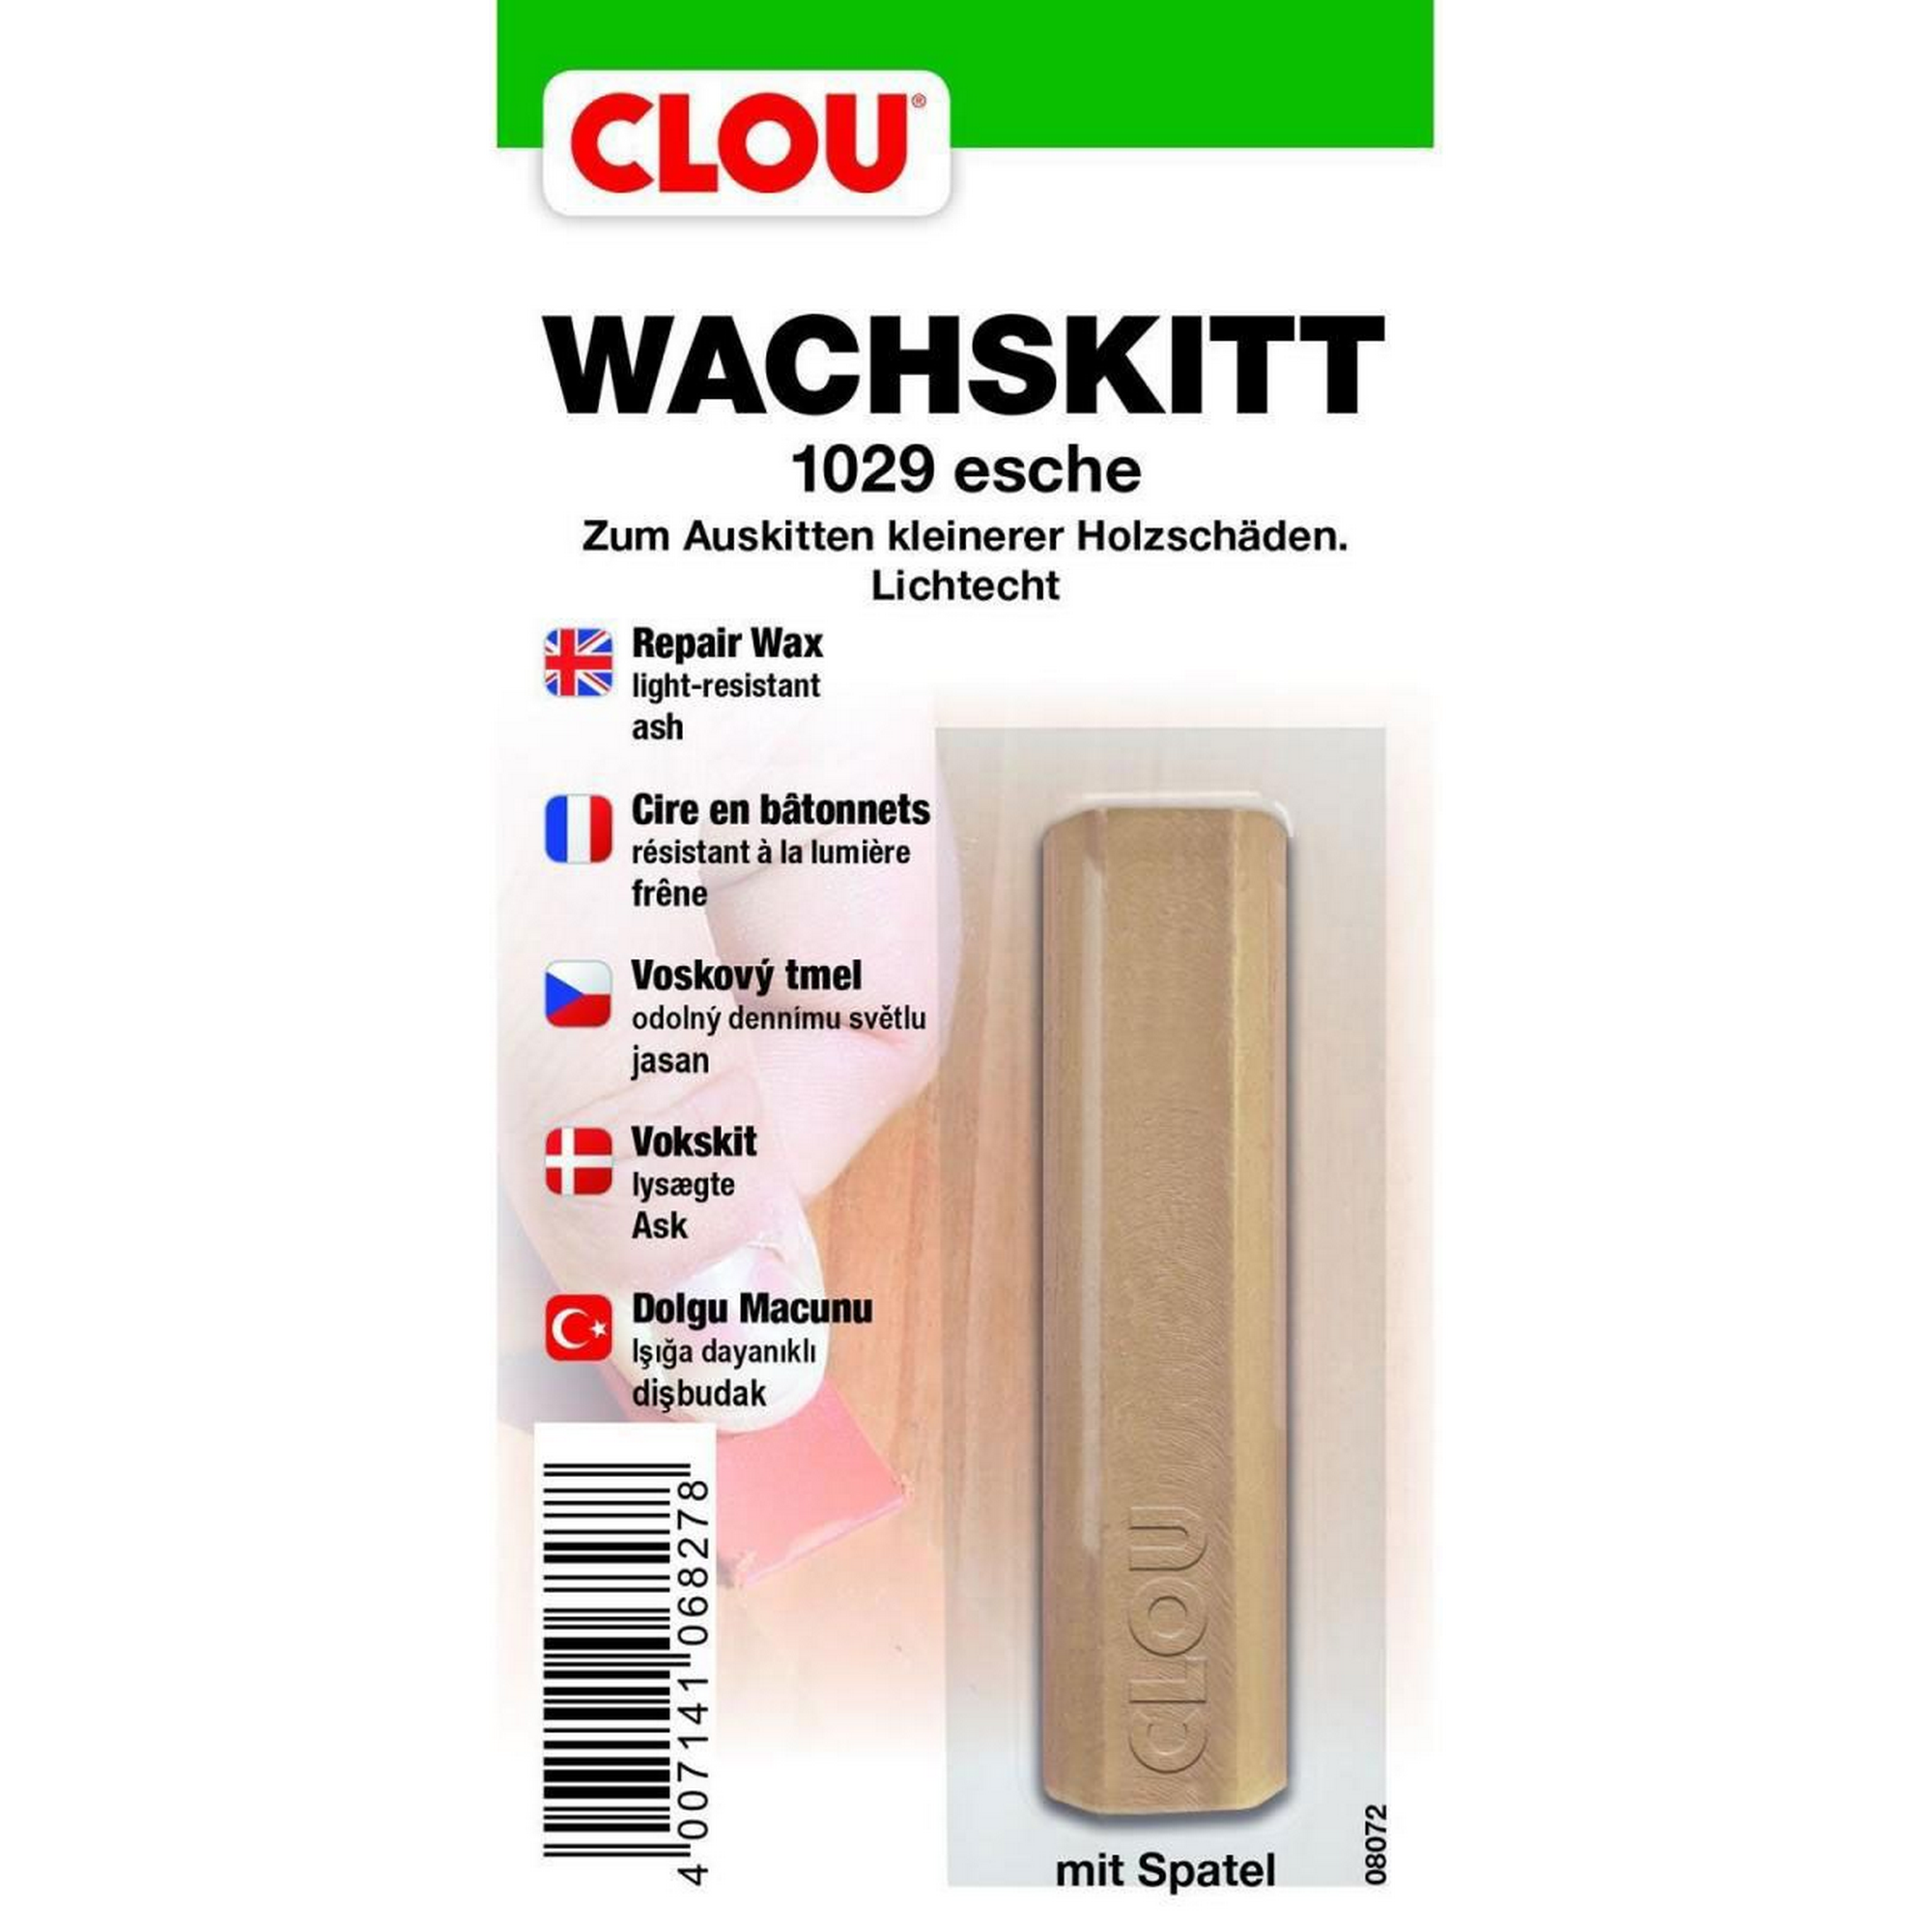 Wachskitt eschefarben + product picture